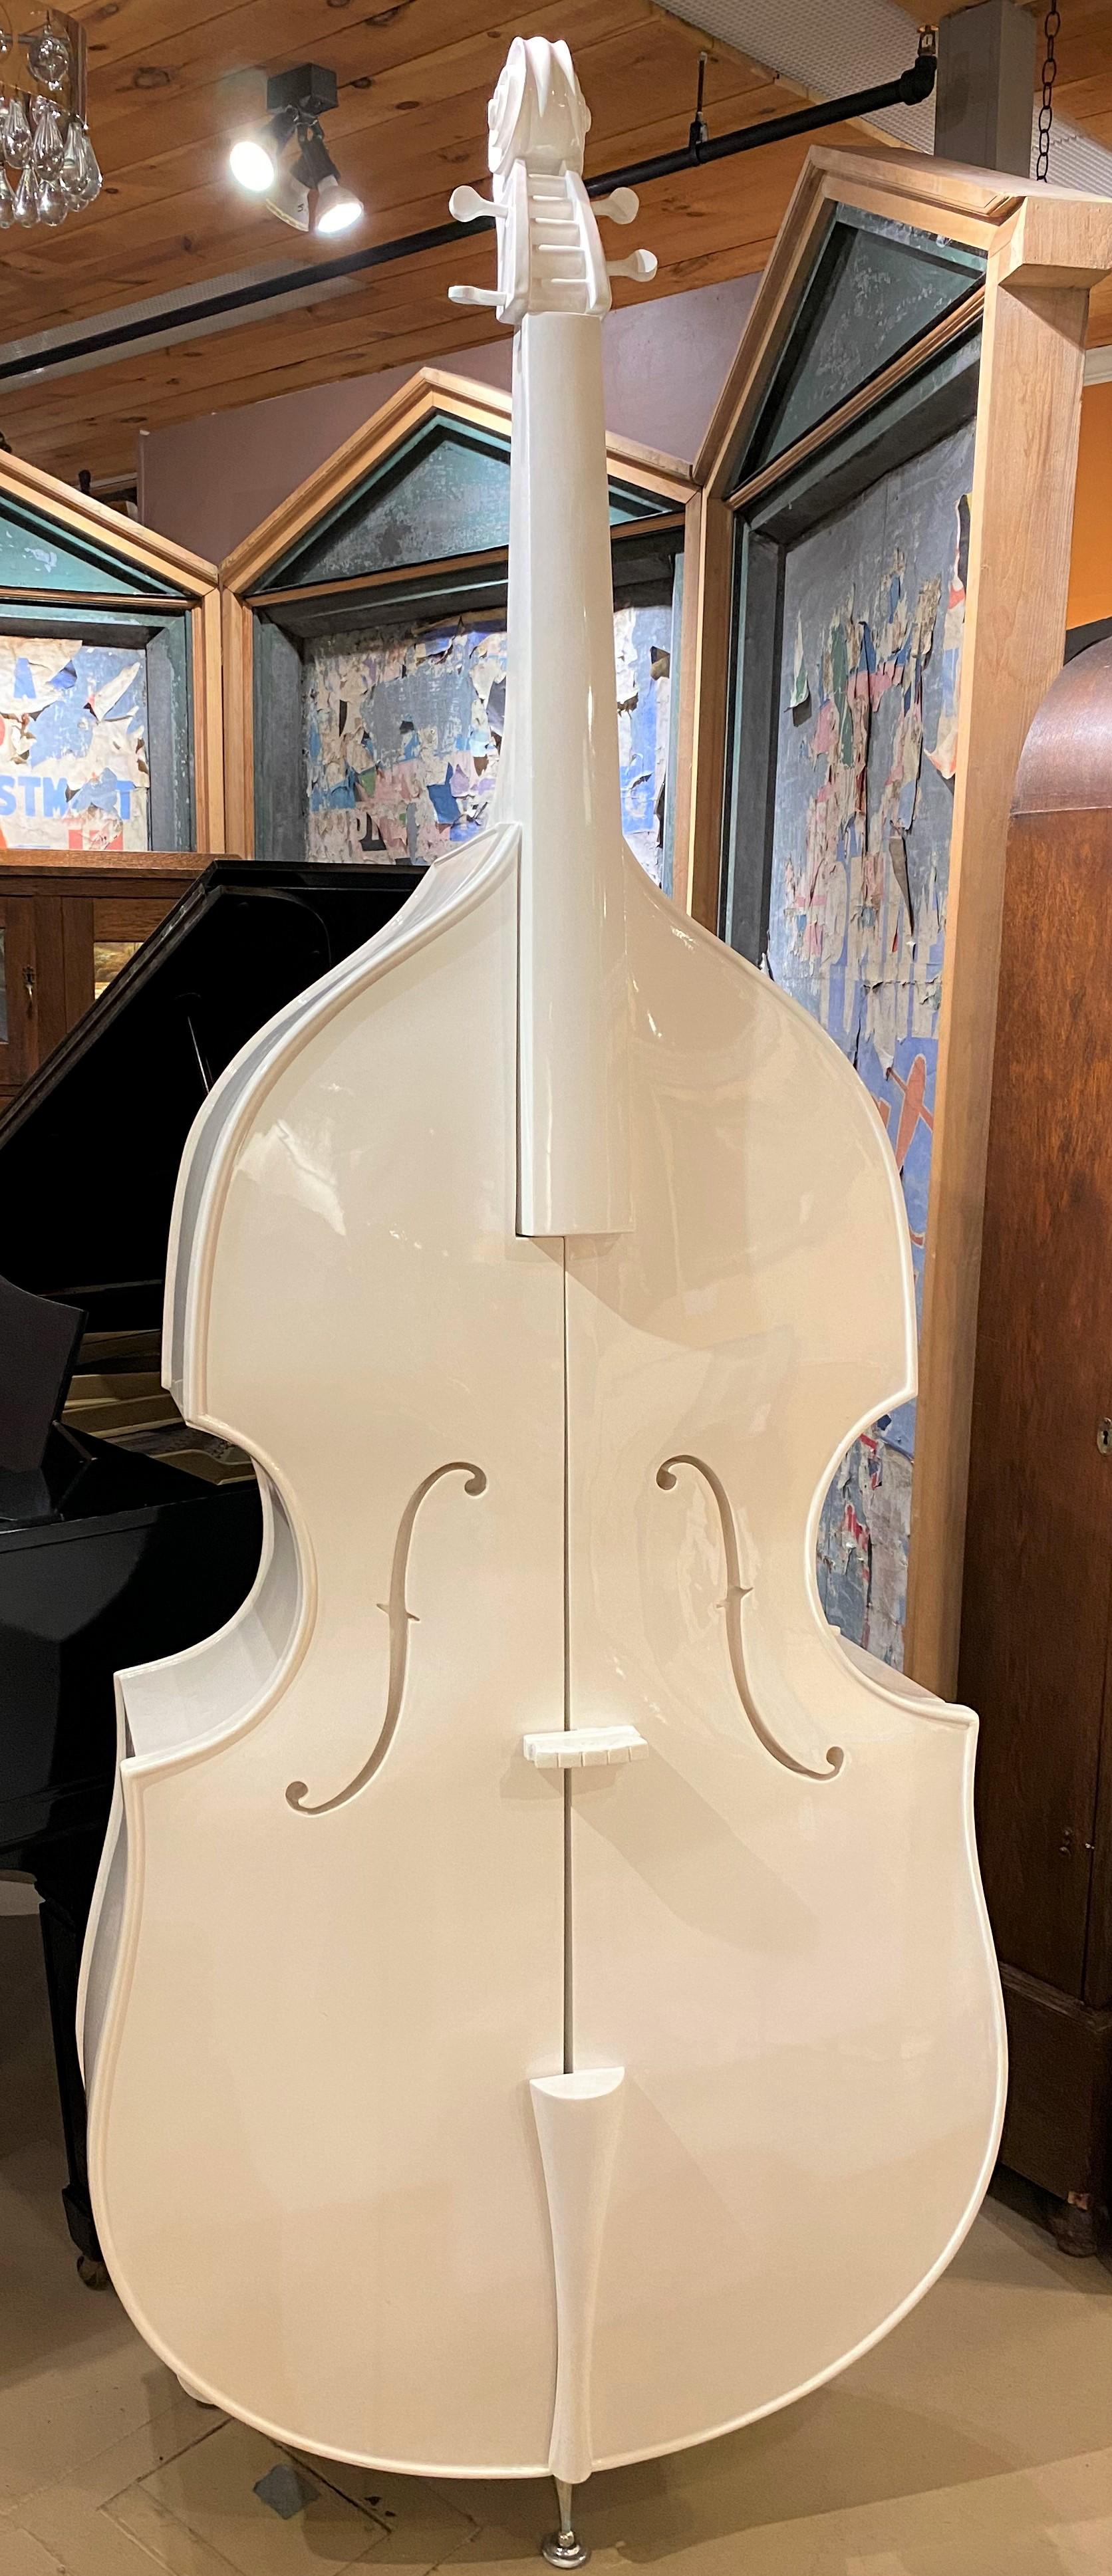 Magnifique meuble moderne à double base ou de forme Cello, laqué blanc, qui s'ouvre par le centre pour révéler trois étagères intérieures cachées, soutenu par un pied en métal à l'avant et deux pieds en bois à l'arrière. Datant de la fin du 20e